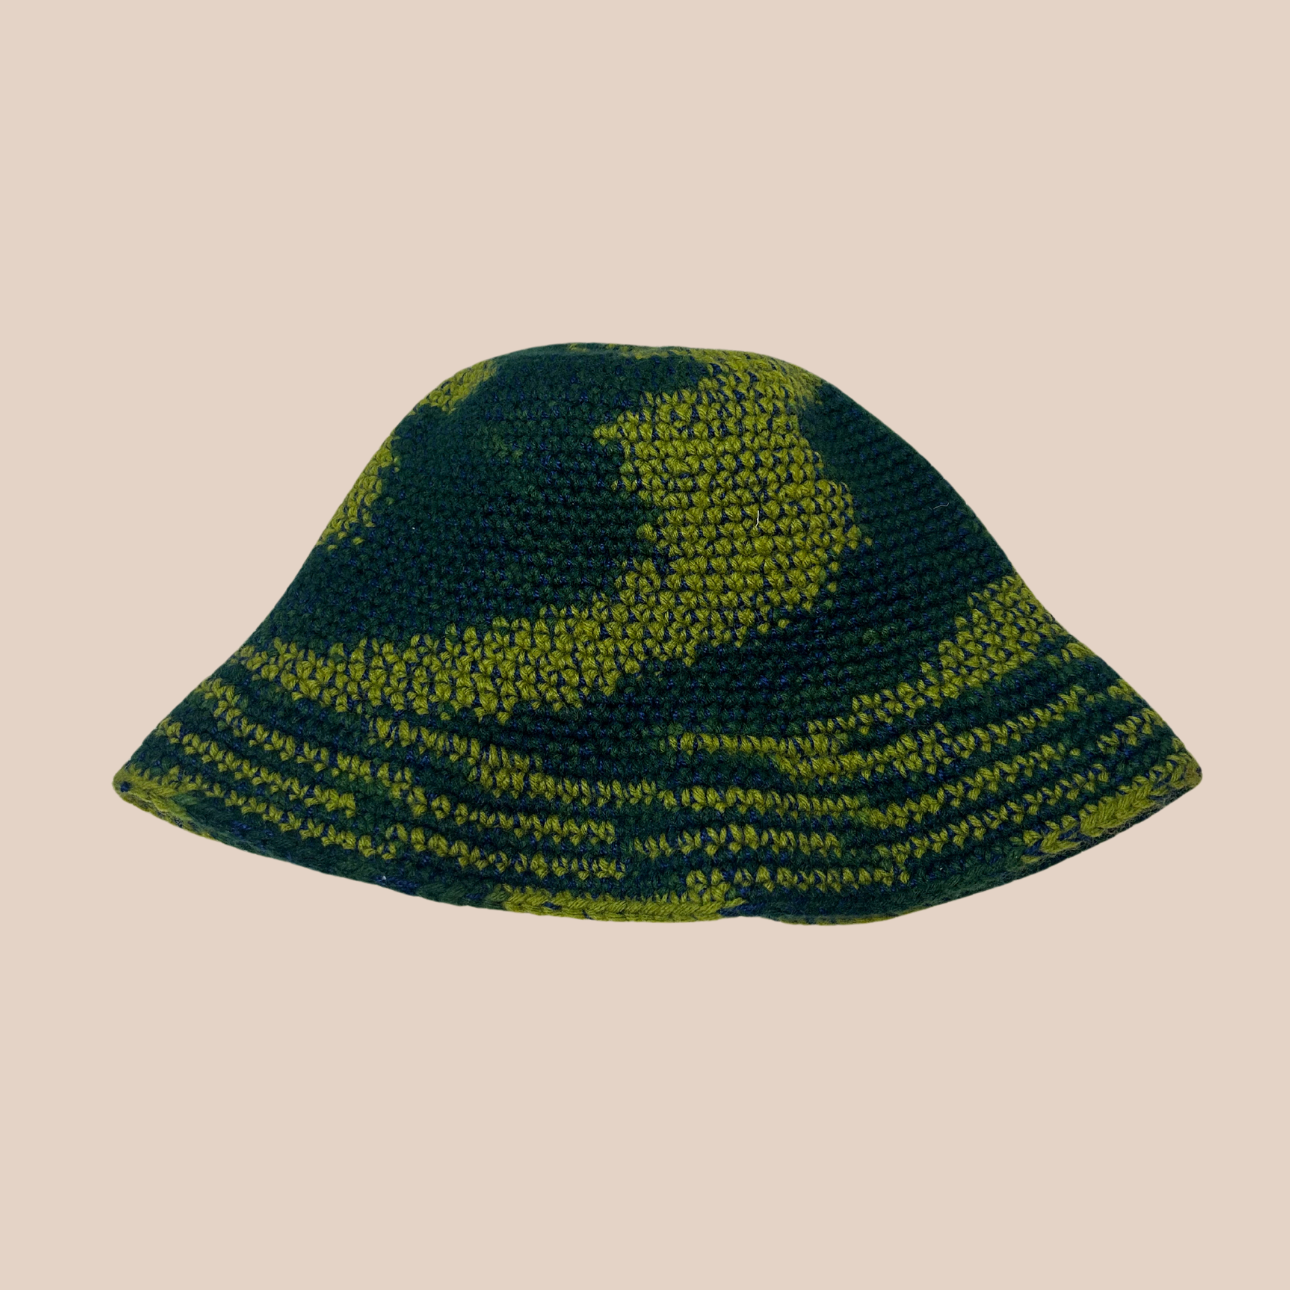 Un bucket hat crocheté en laine et acrylique, arborant des couleurs vertes